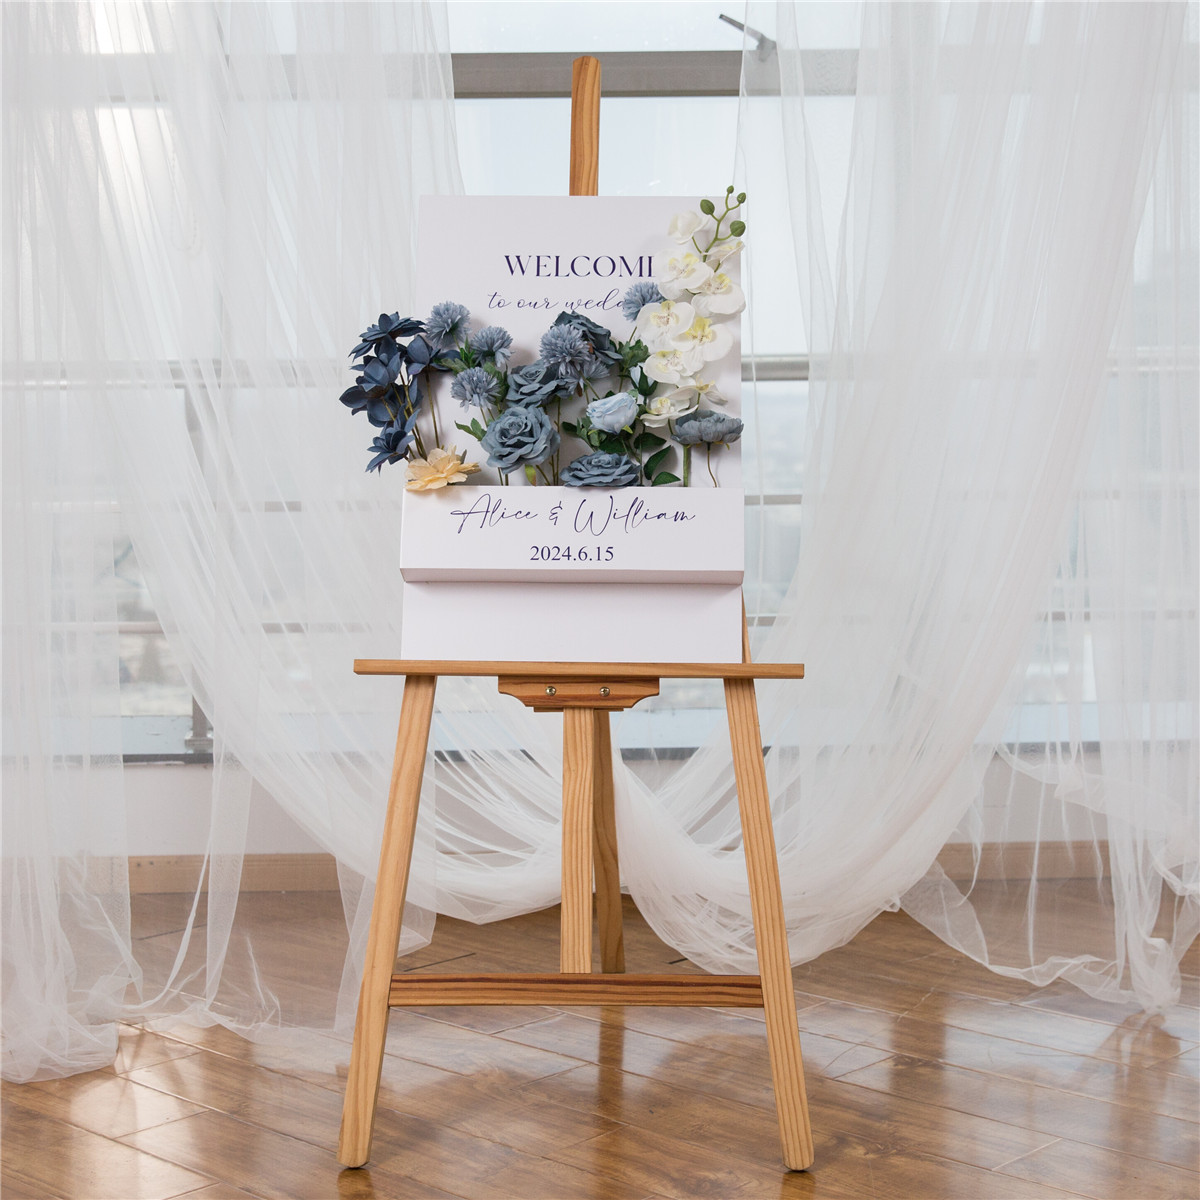 3mm Cartelli Plexiglass tableau di mariage con fiori YK071 - Clicca l'immagine per chiudere